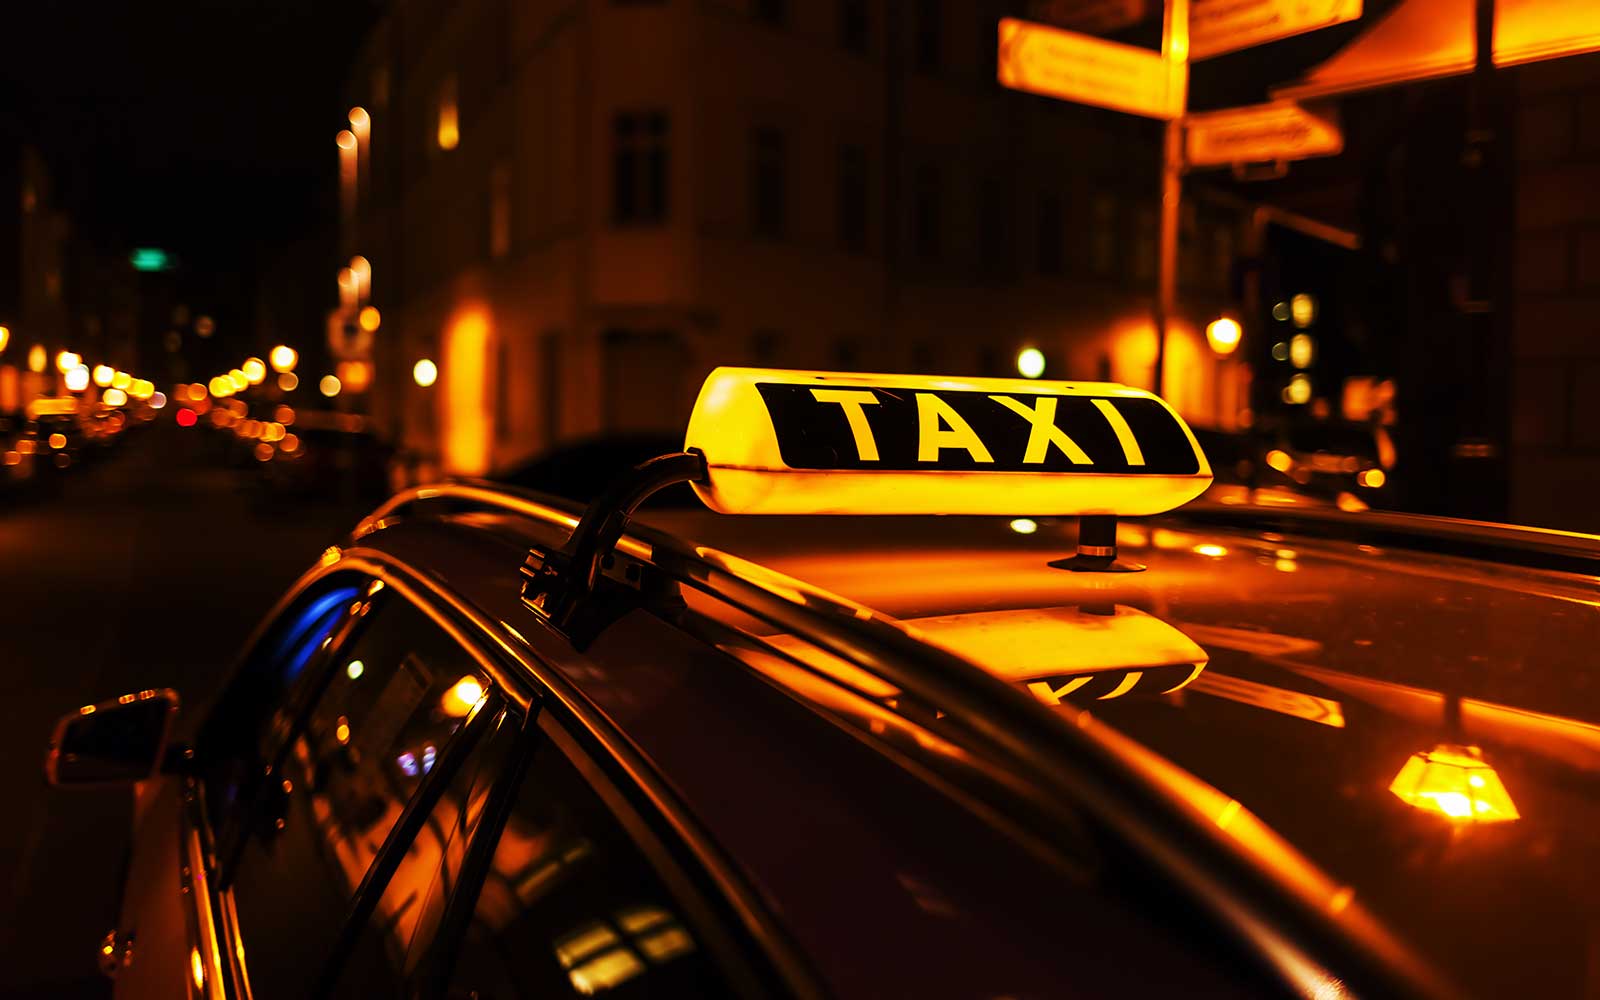 Ein beleuchtetes Taxischild auf einem fahrenden Taxi in der Nacht.